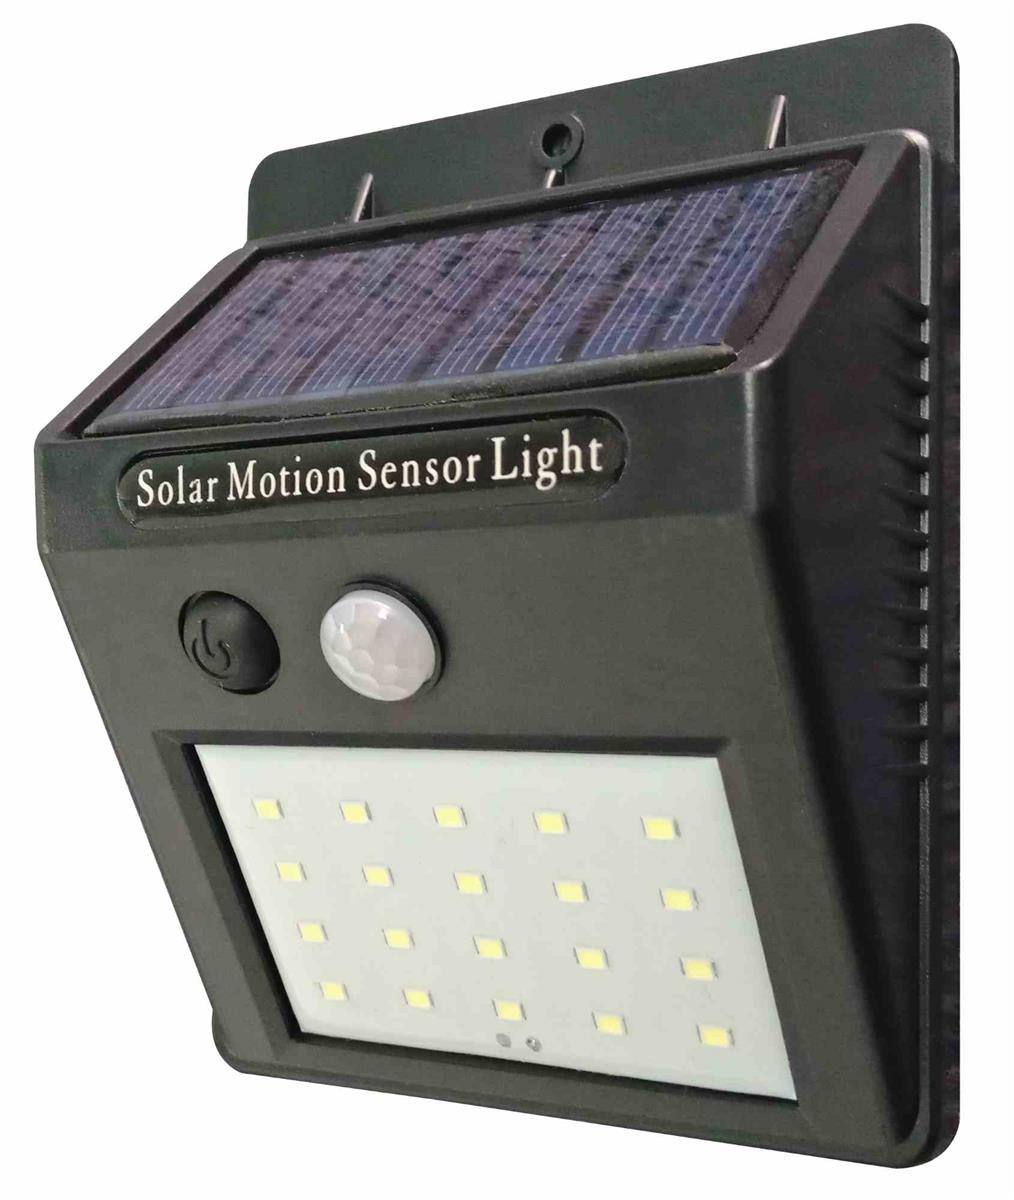 Прожектор светодиодный уличный на солнечных батареях. Jy6009 Solar Motion sensor Light. Фонарь Solar Motion sensor Light. Прожектор светодиодный Solar Motion sensor Light. Светодиодный светильник Solar Motion sensor Light.